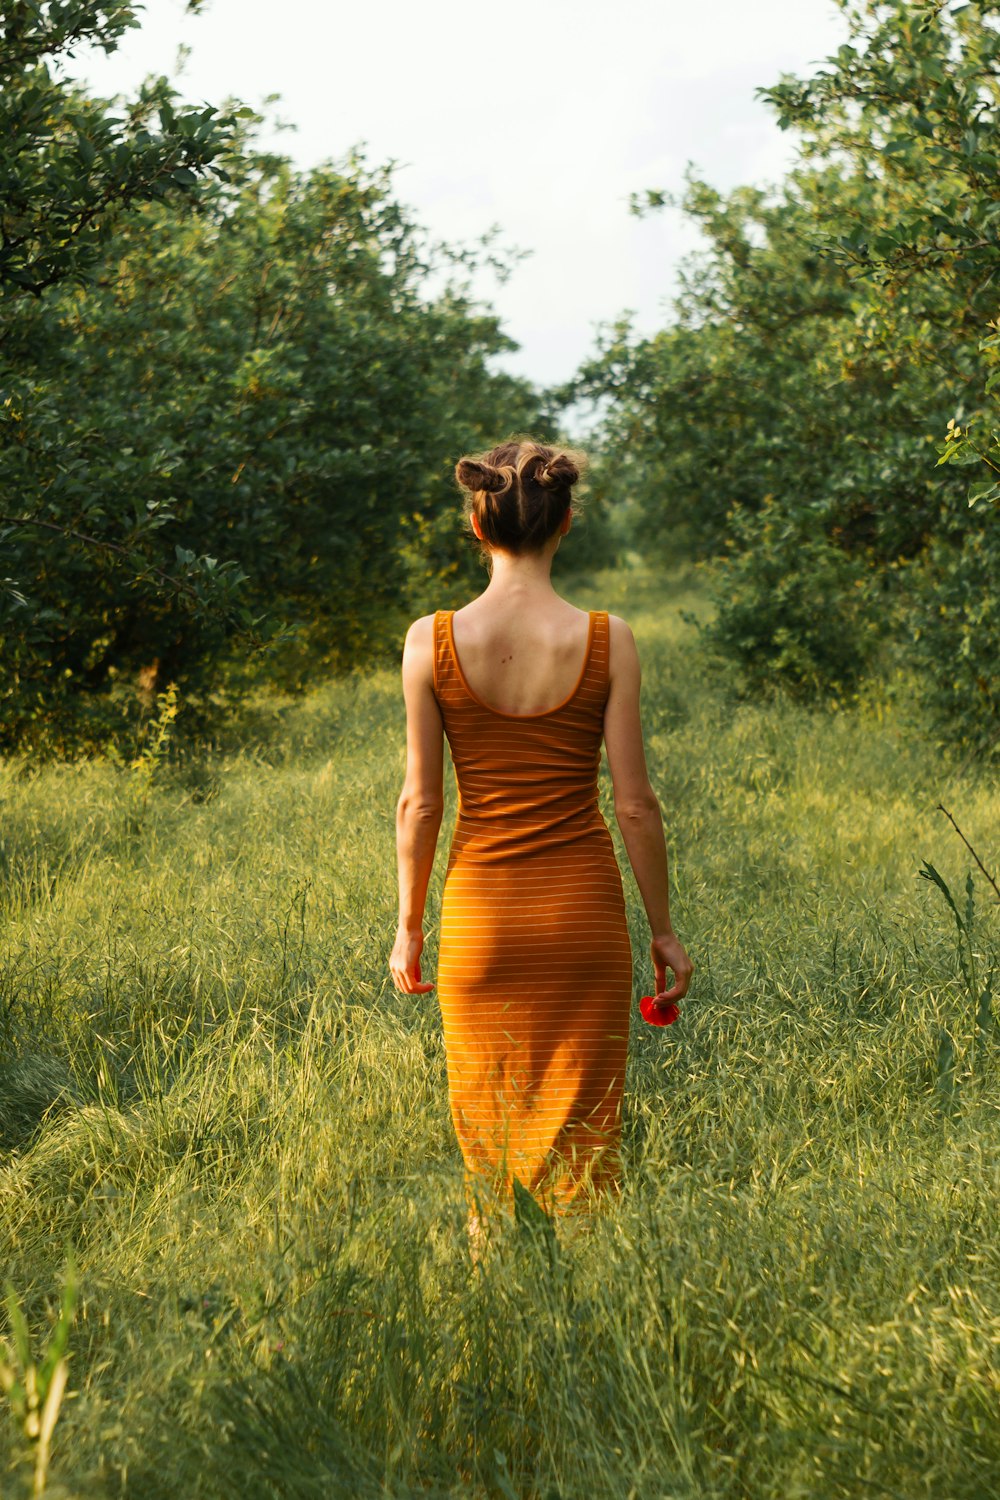 昼間、緑の芝生の上に立つオレンジ色のタンクドレスを着た女性